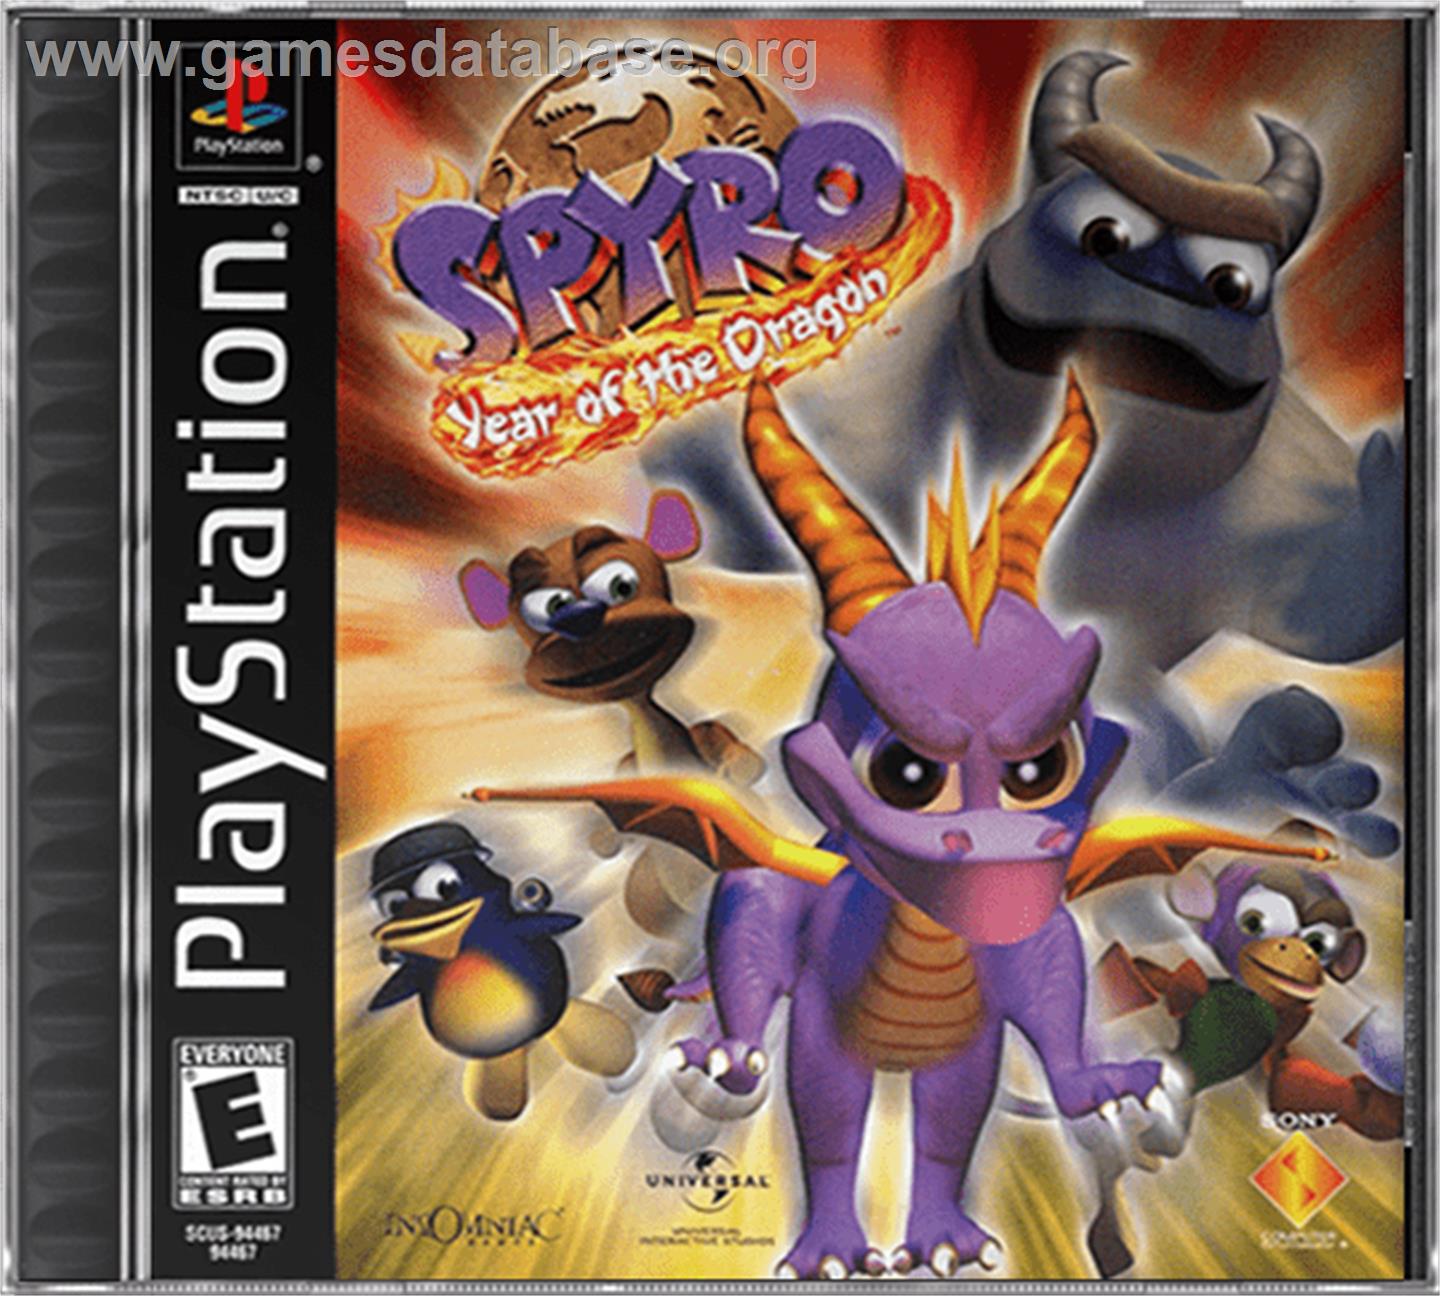 Spyro: Year of the Dragon - Sony Playstation - Artwork - Box